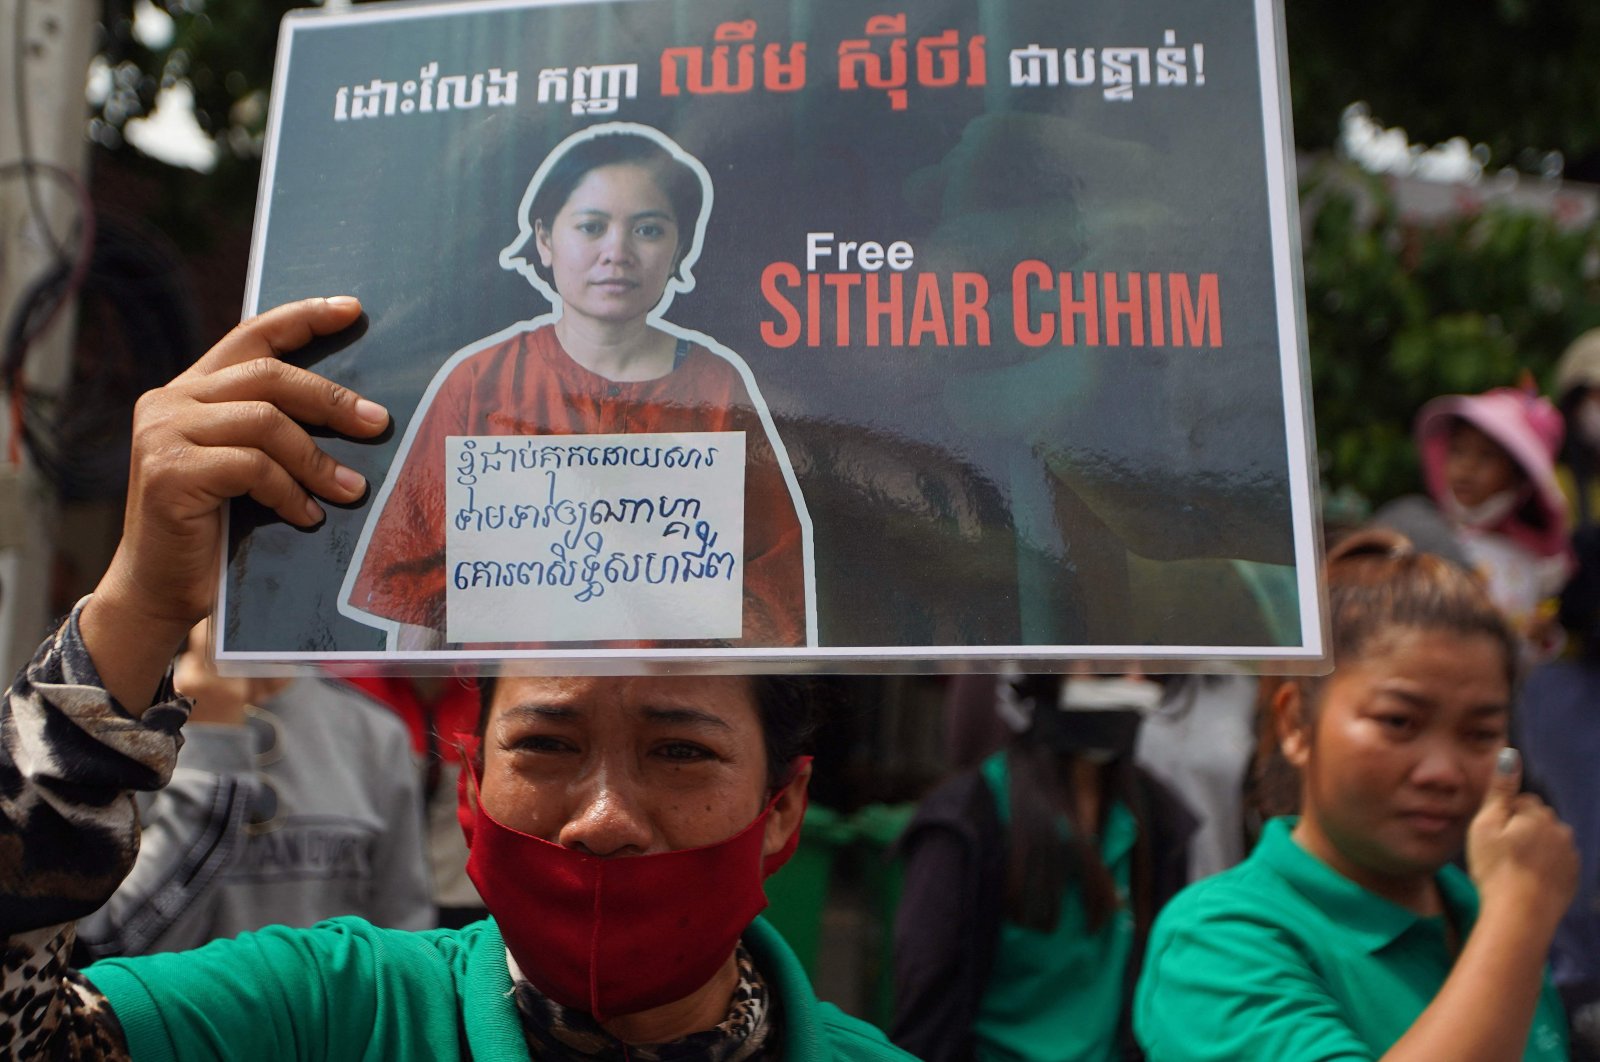 Ketua serikat buruh Kamboja yang menentang pemogokan kasino mendapat 2 tahun penjara